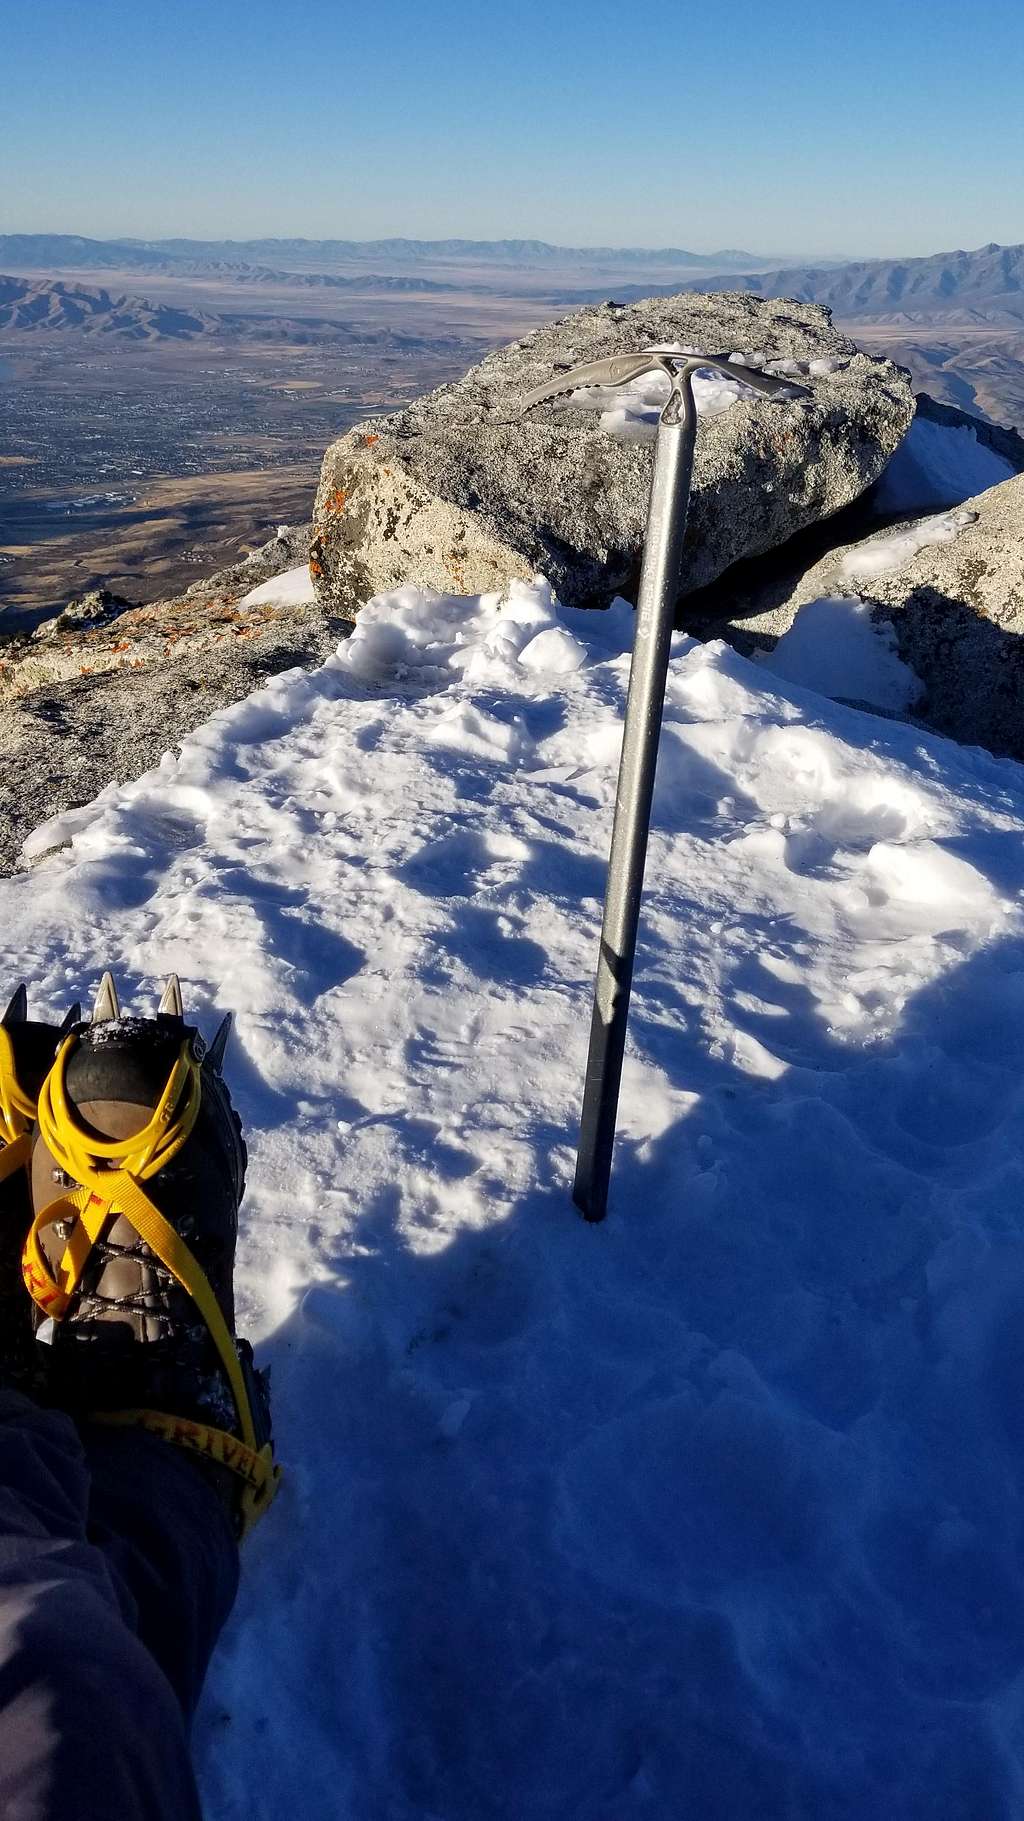 On the Lone Peak summit!